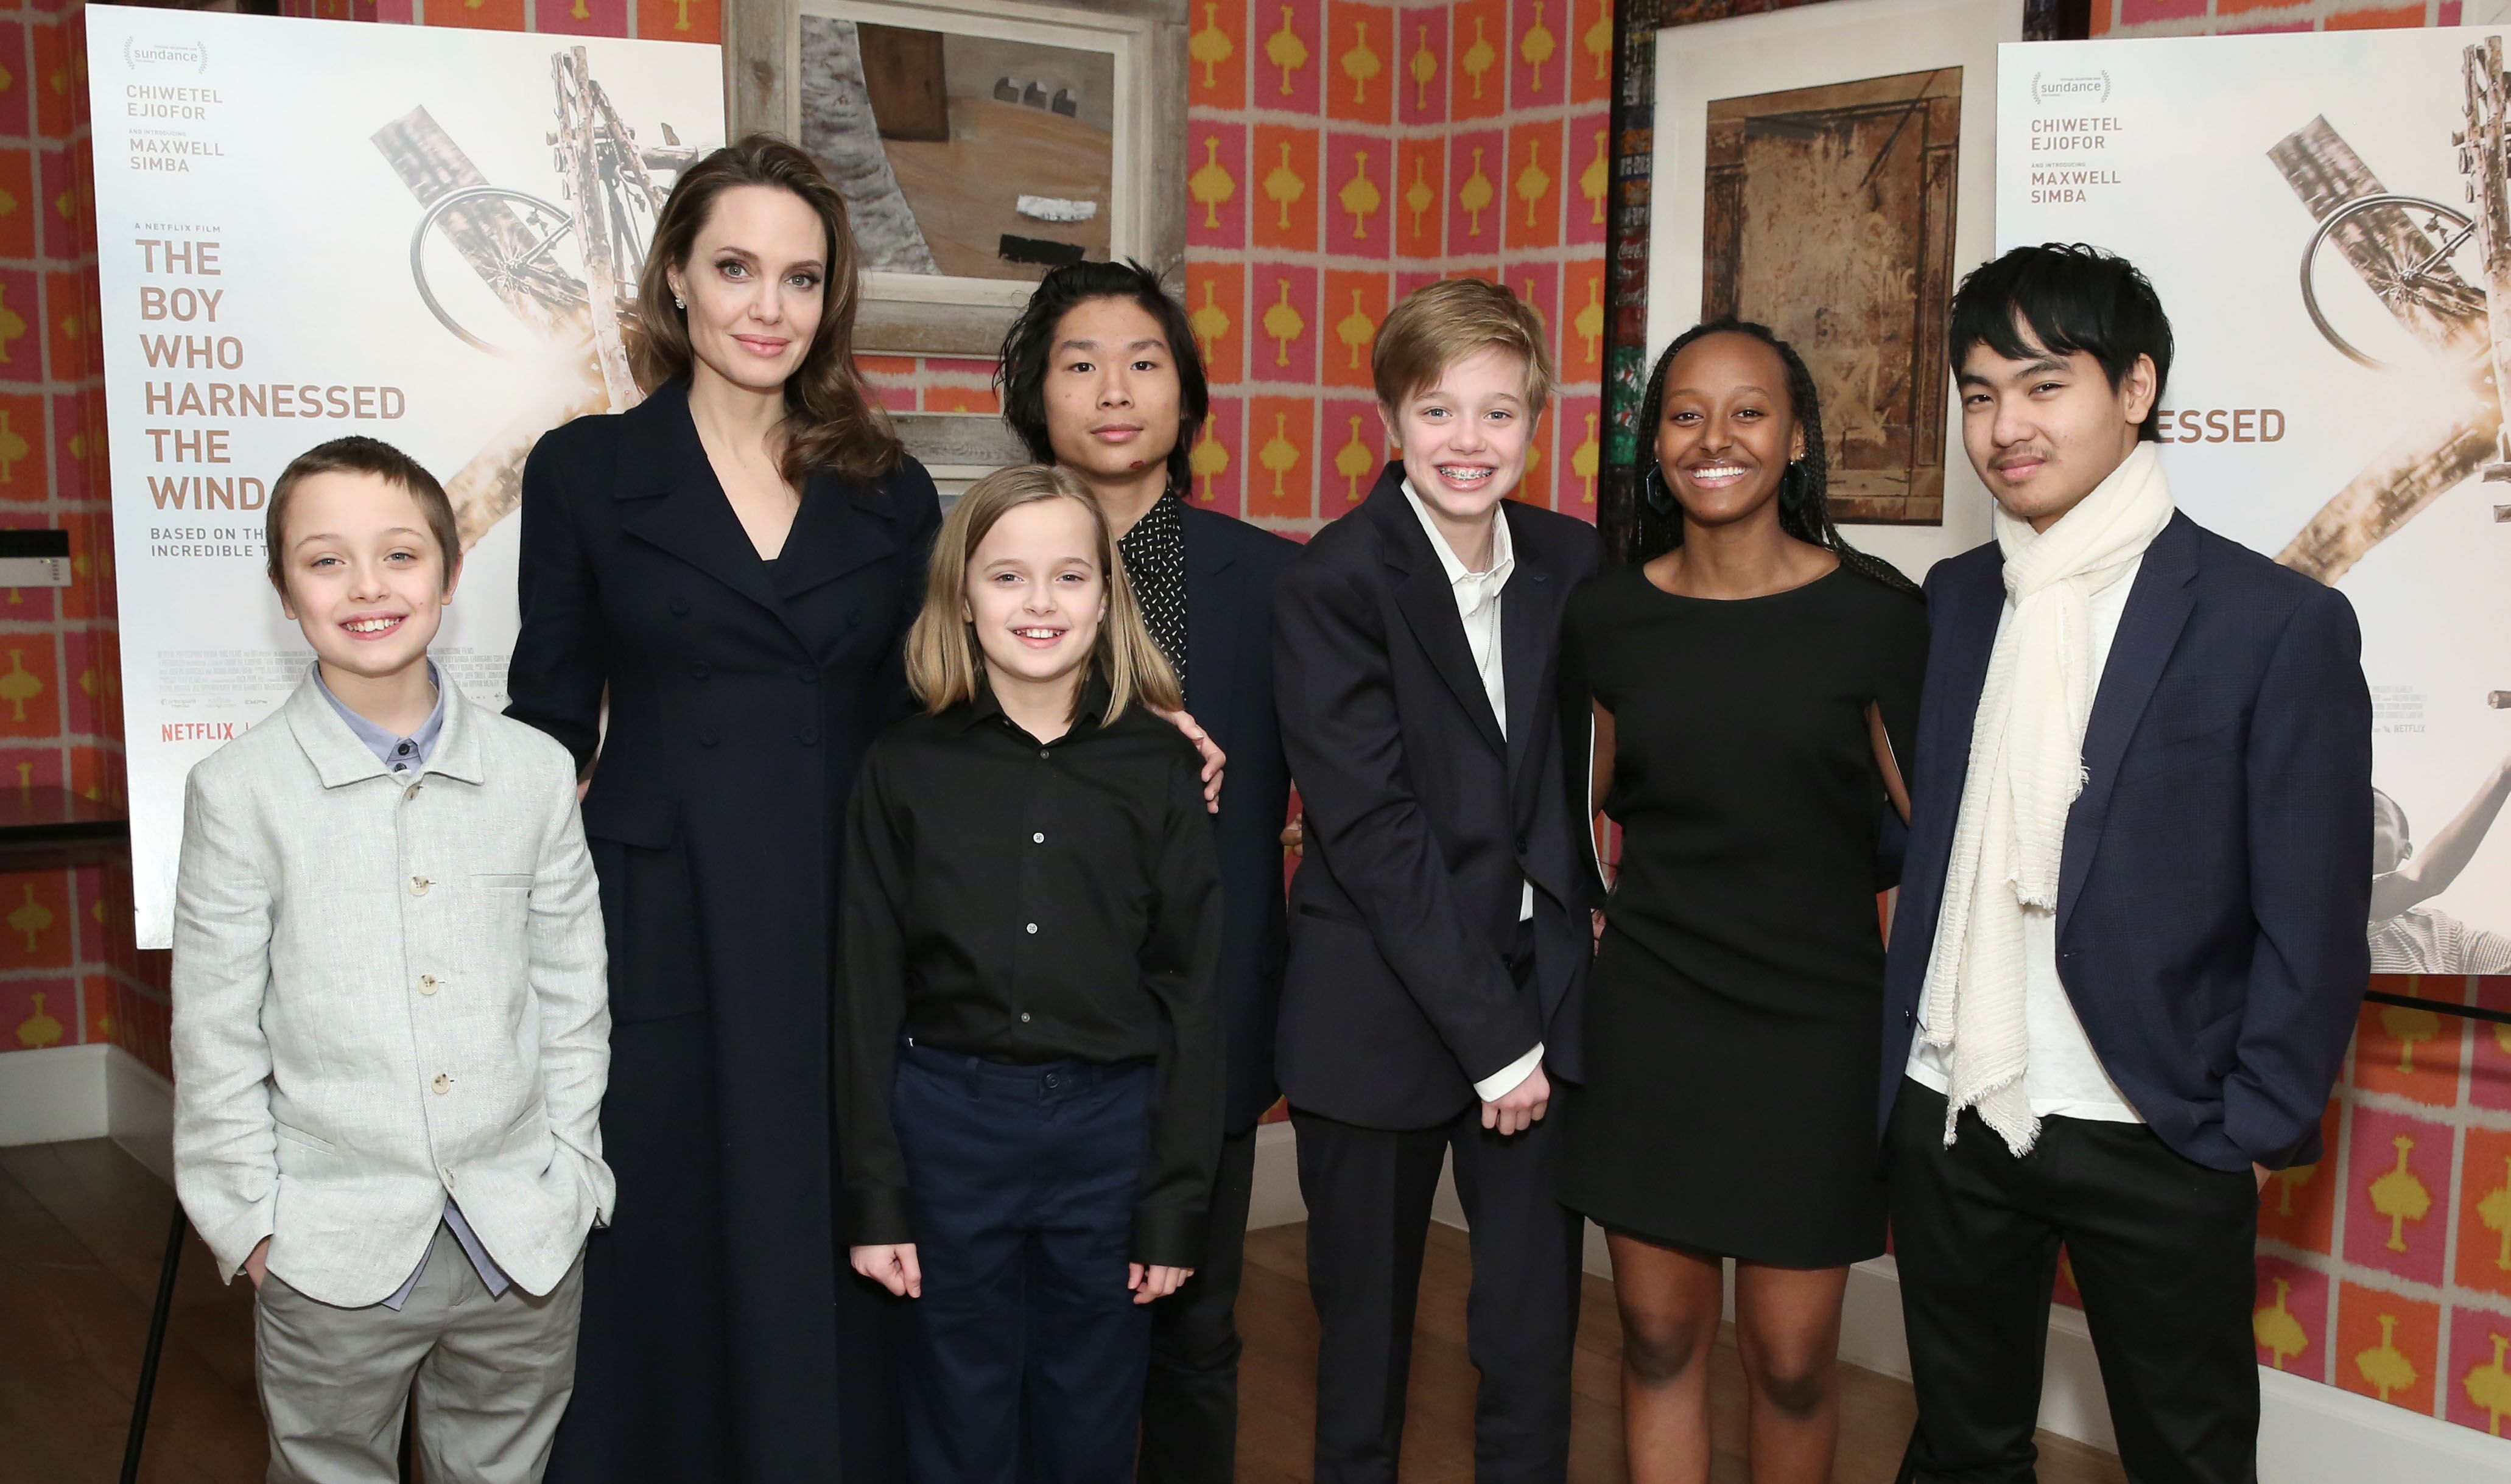 Angelina Jolie mit den Kindern Knox, Vivienne, Pax, Shiloh, Zahara und Maddox Jolie-Pitt bei der Vorführung von "The Boy Who Harnessed The Wind" im Jahr 2019 | Quelle: Getty Images